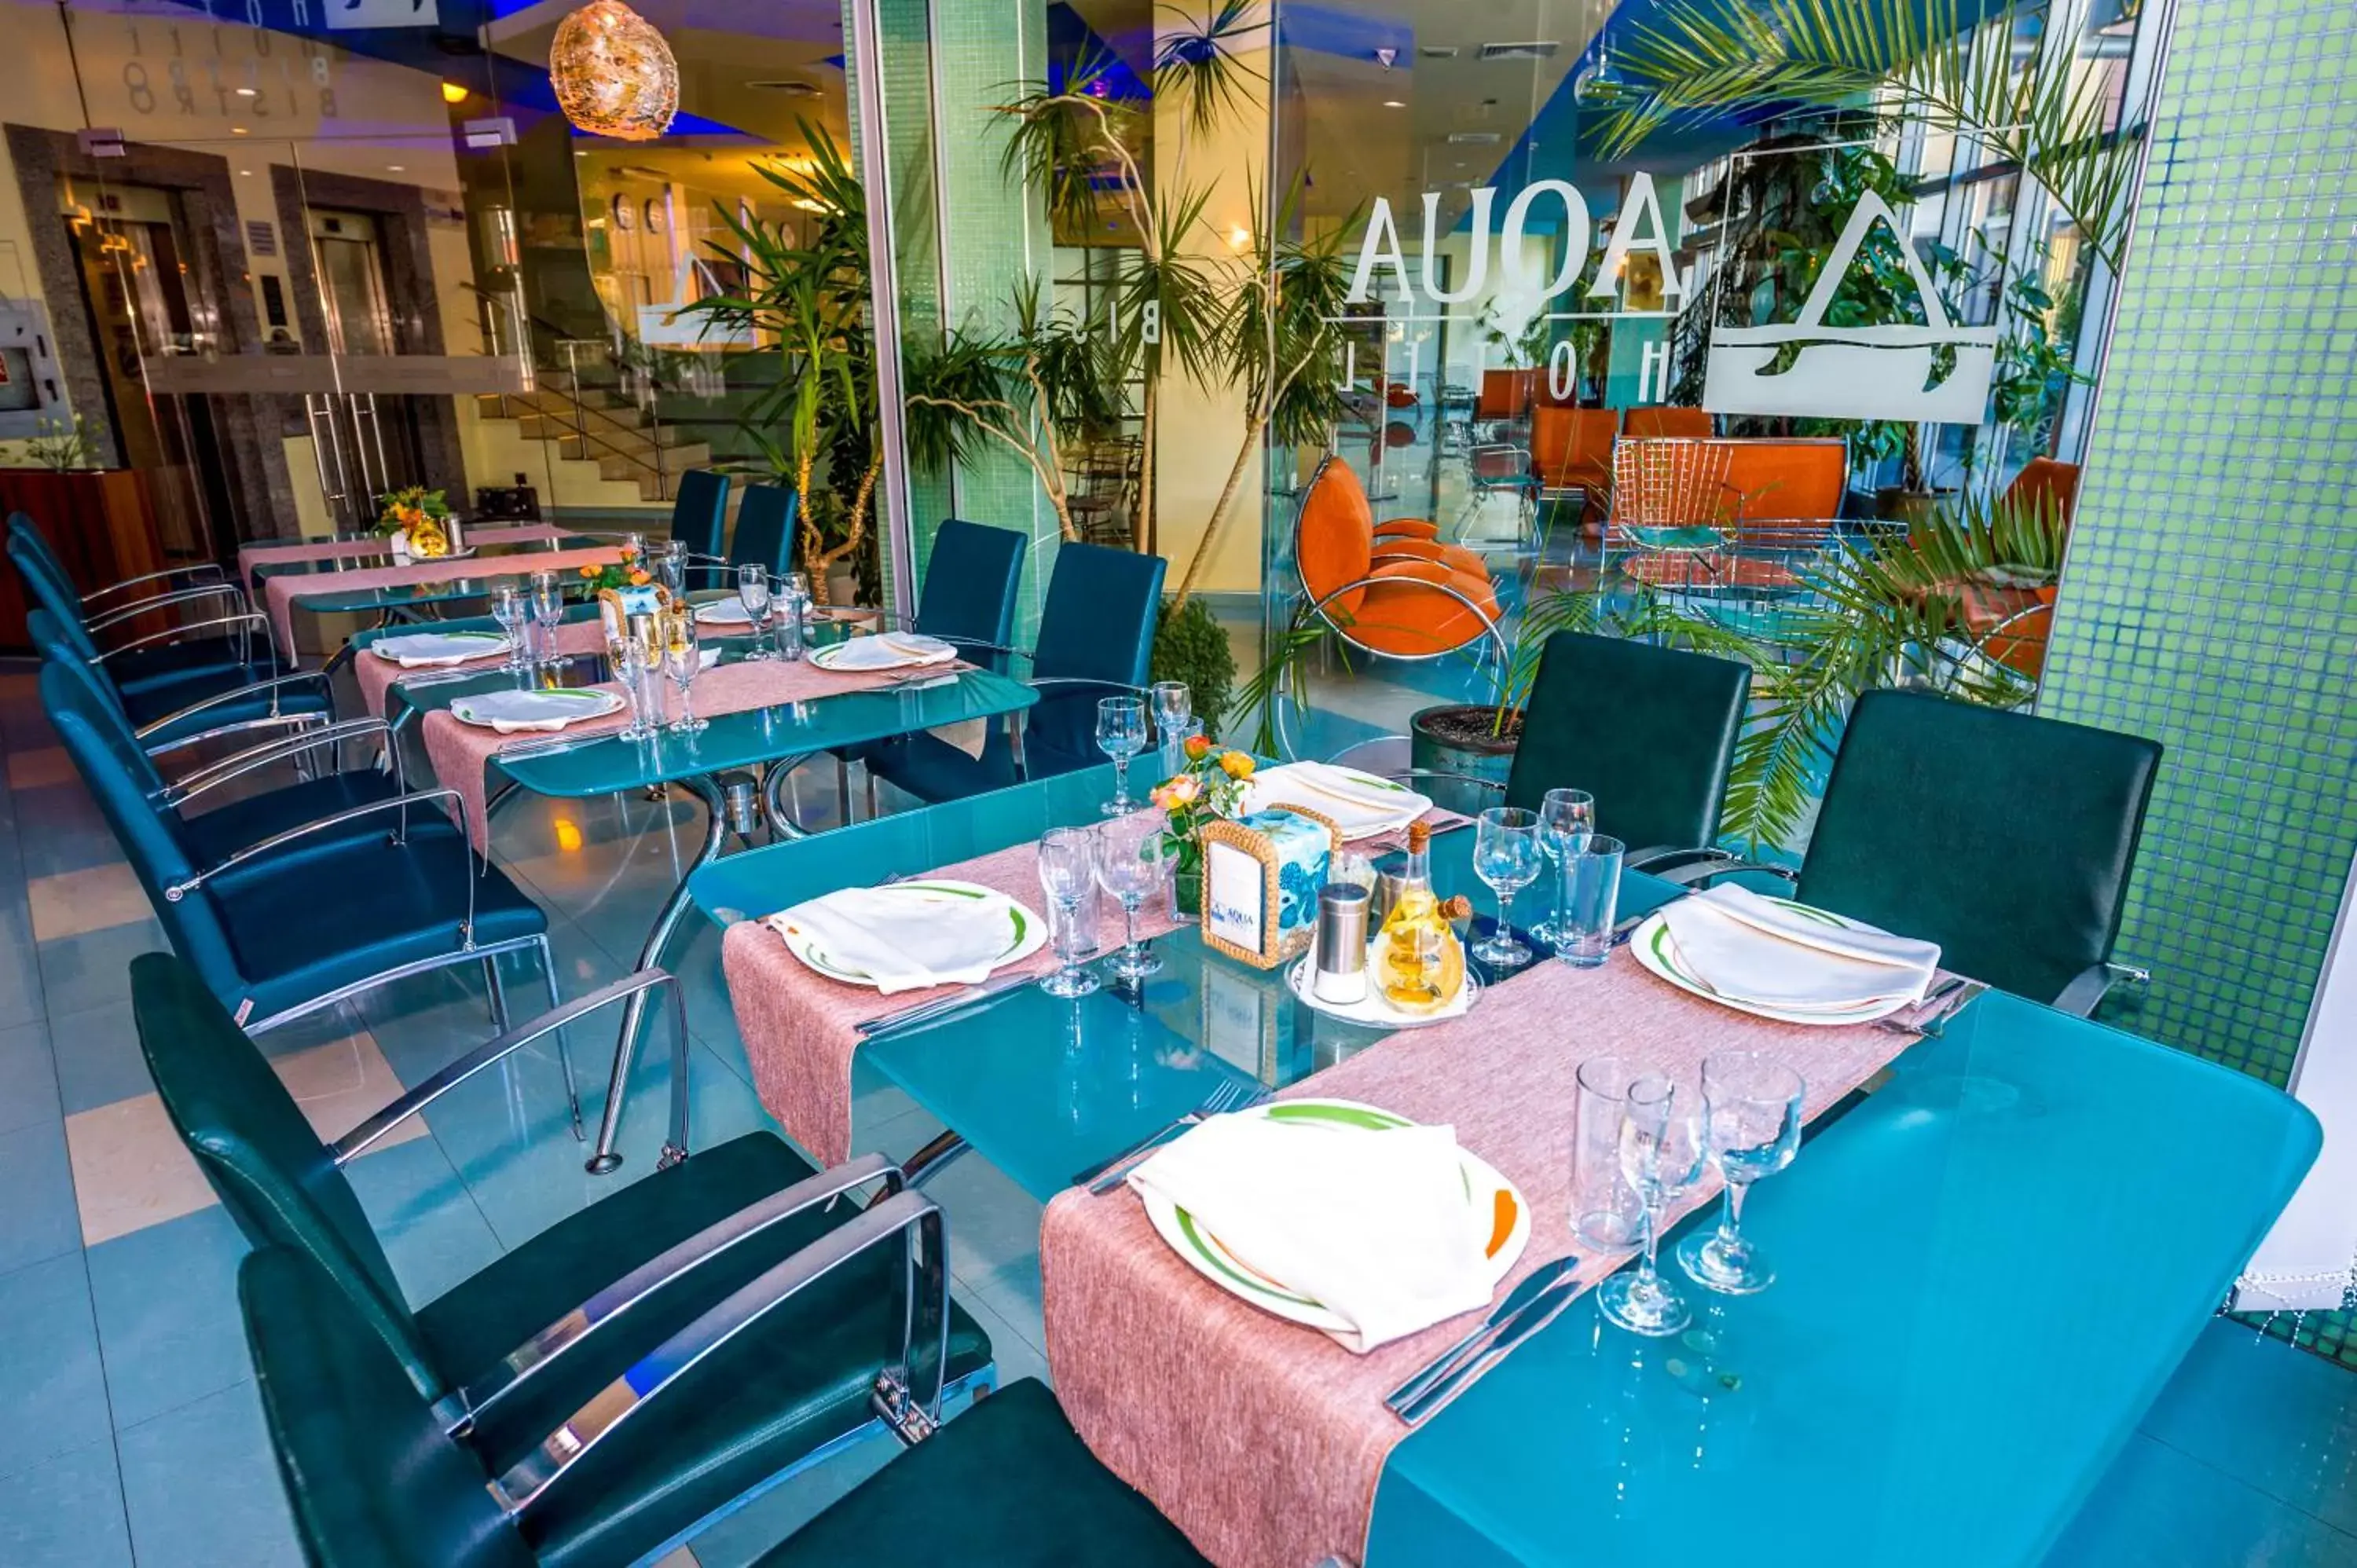 Restaurant/Places to Eat in Aqua Hotel